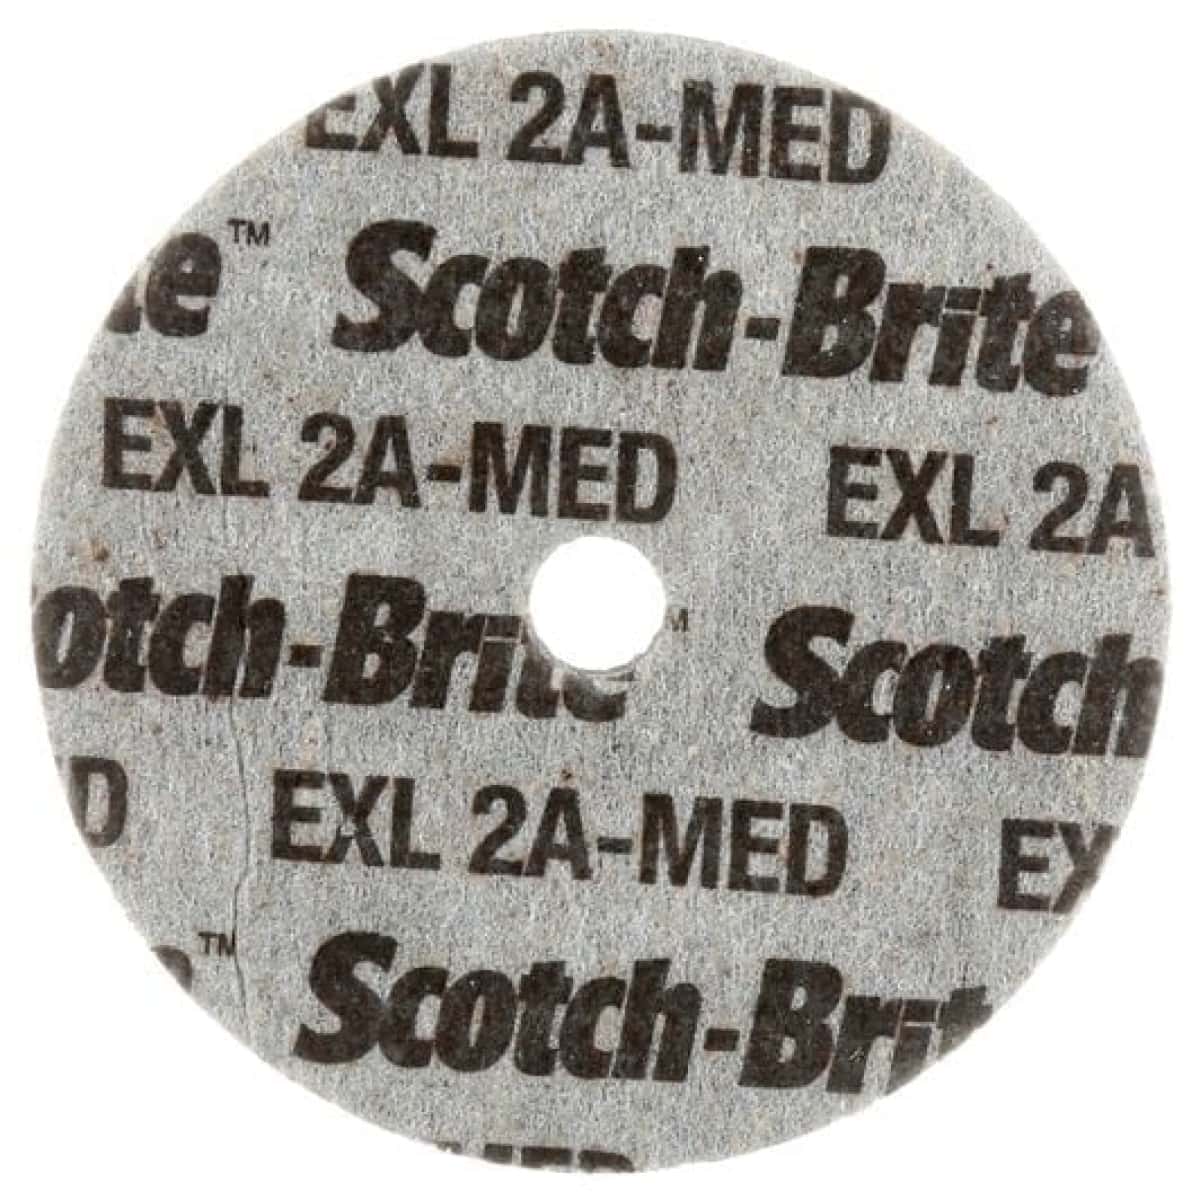 3M™ Scotch-Brite™ EXL XL-UW 03783, Ø 76,2 mm x 12,7 mm, ø 6,35 mm, Härte 2, P320 - 500, A, Medium, 10.000 U./Min., Verpresste Kompaktscheibe, Für Entgratungs- und Finisharbeiten